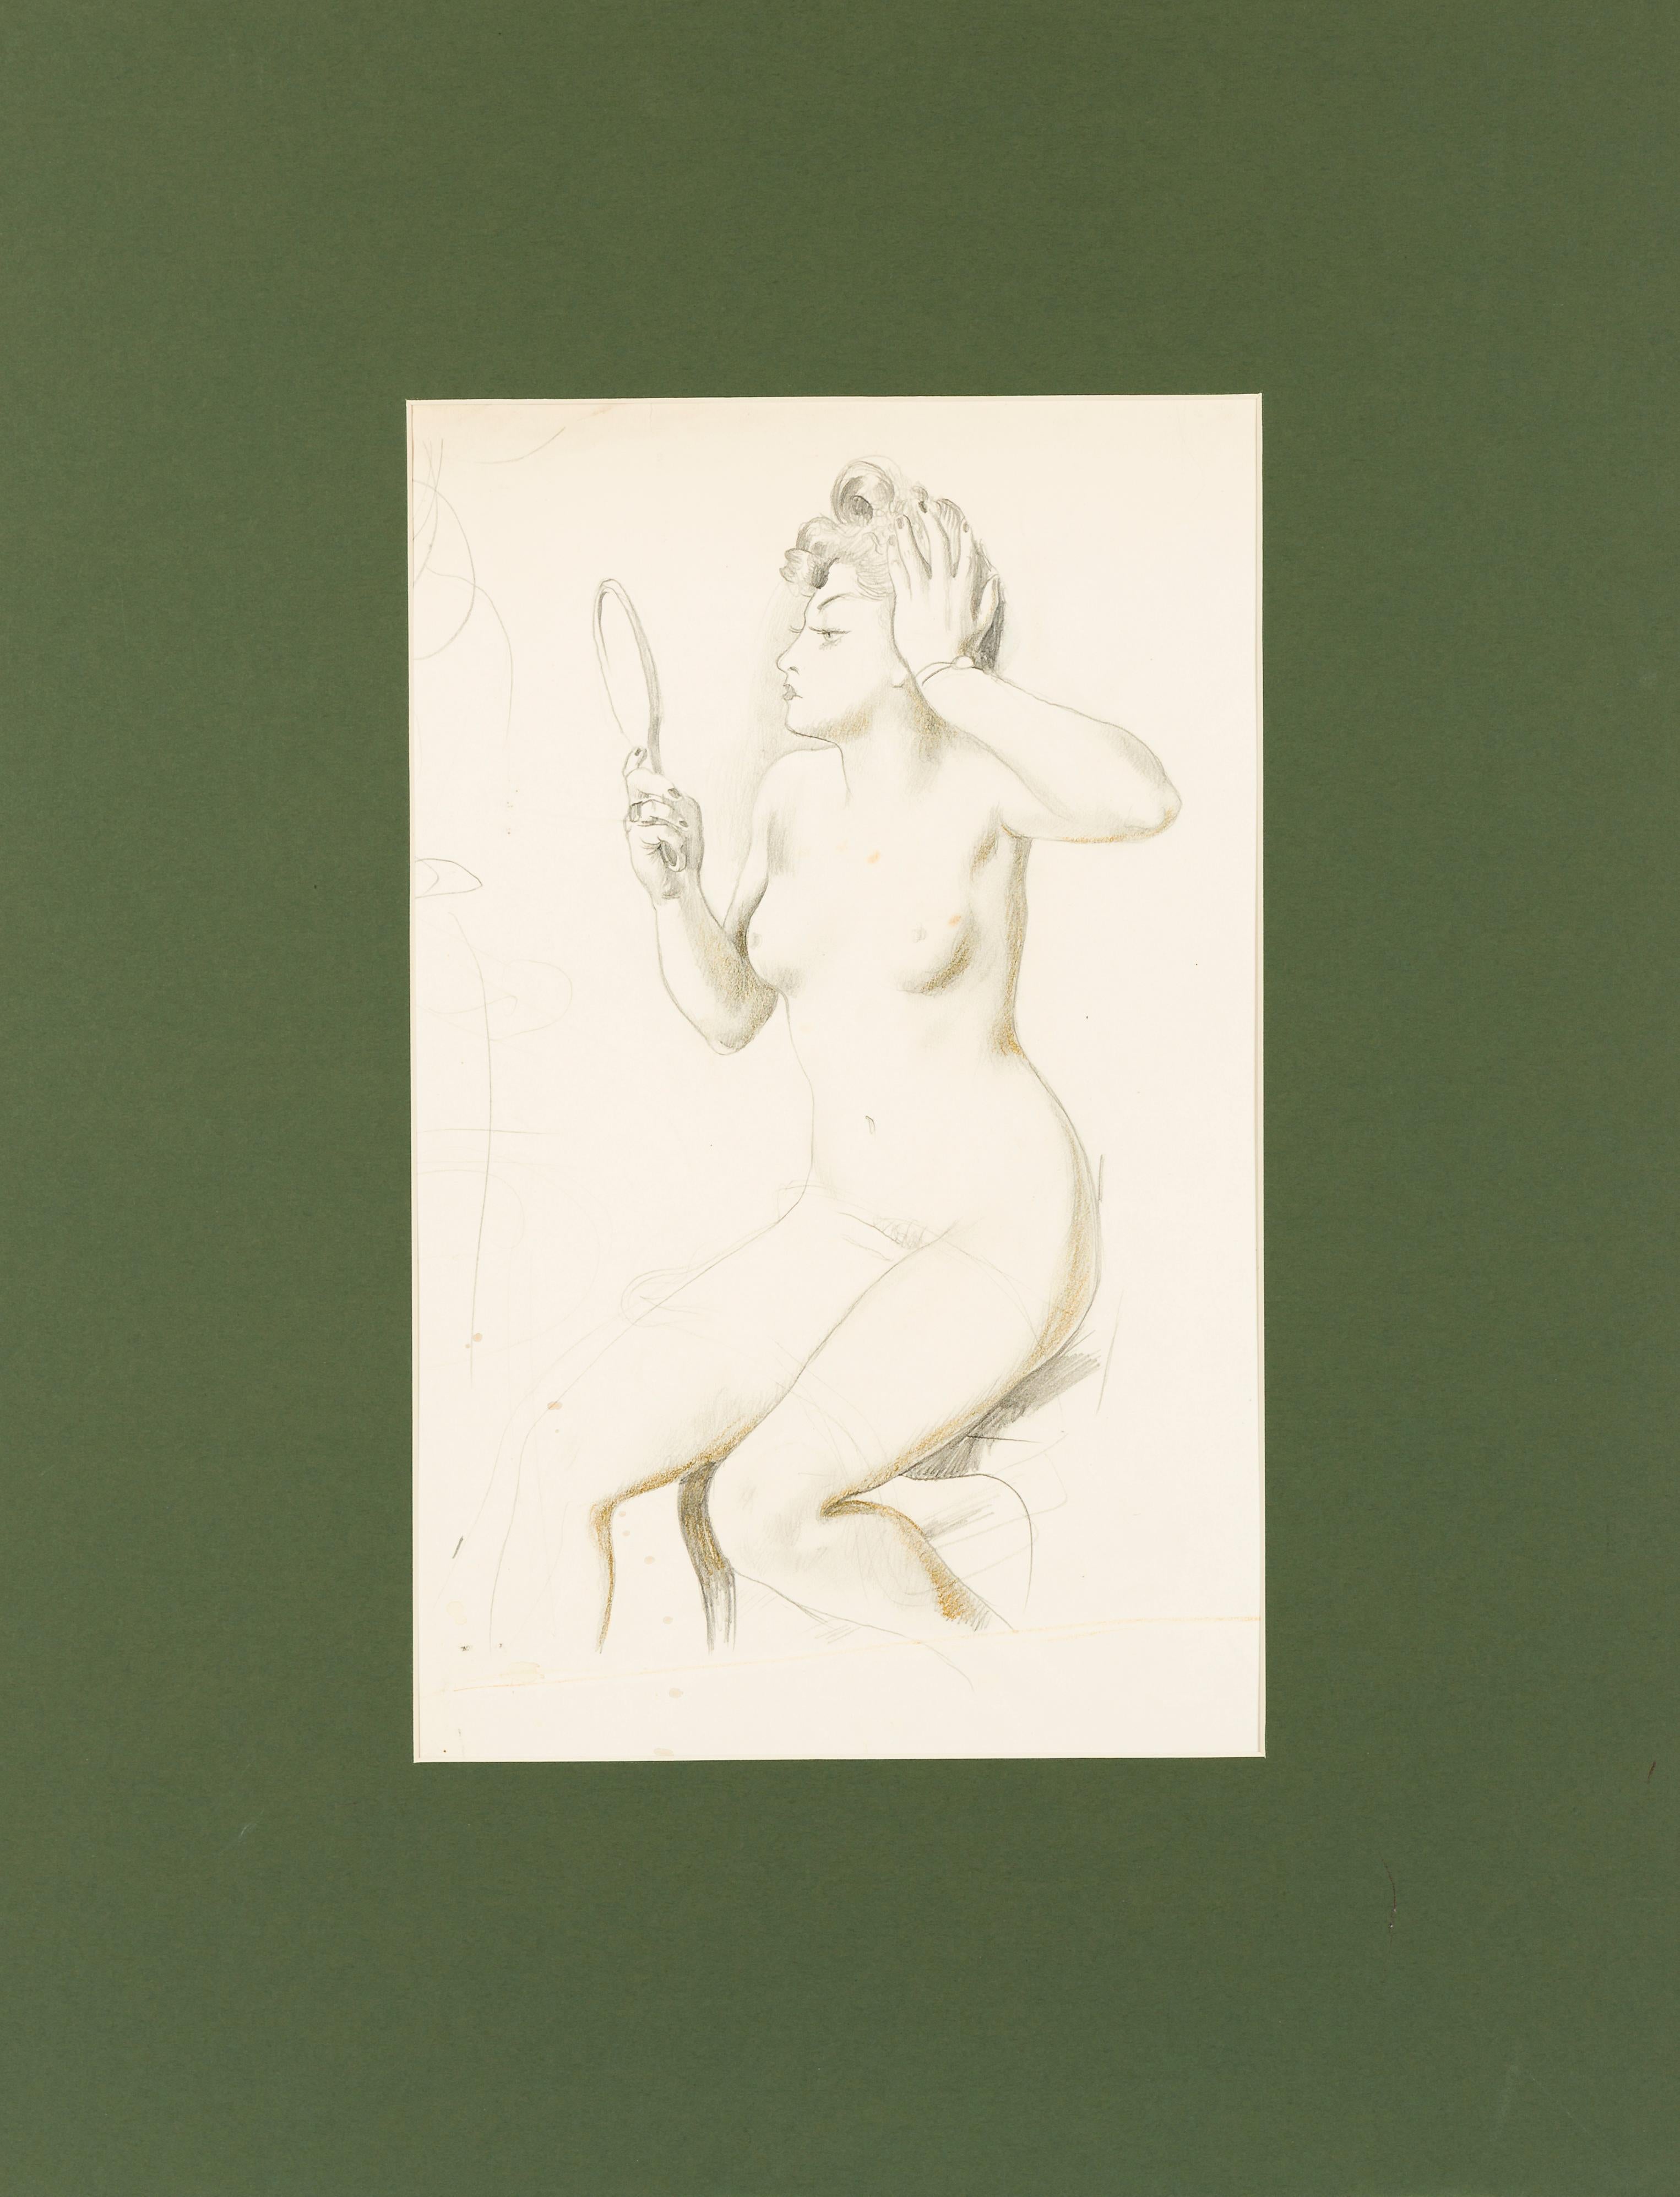 Akt mit Handspiegel - Modern Art by August Wilhelm Dressler